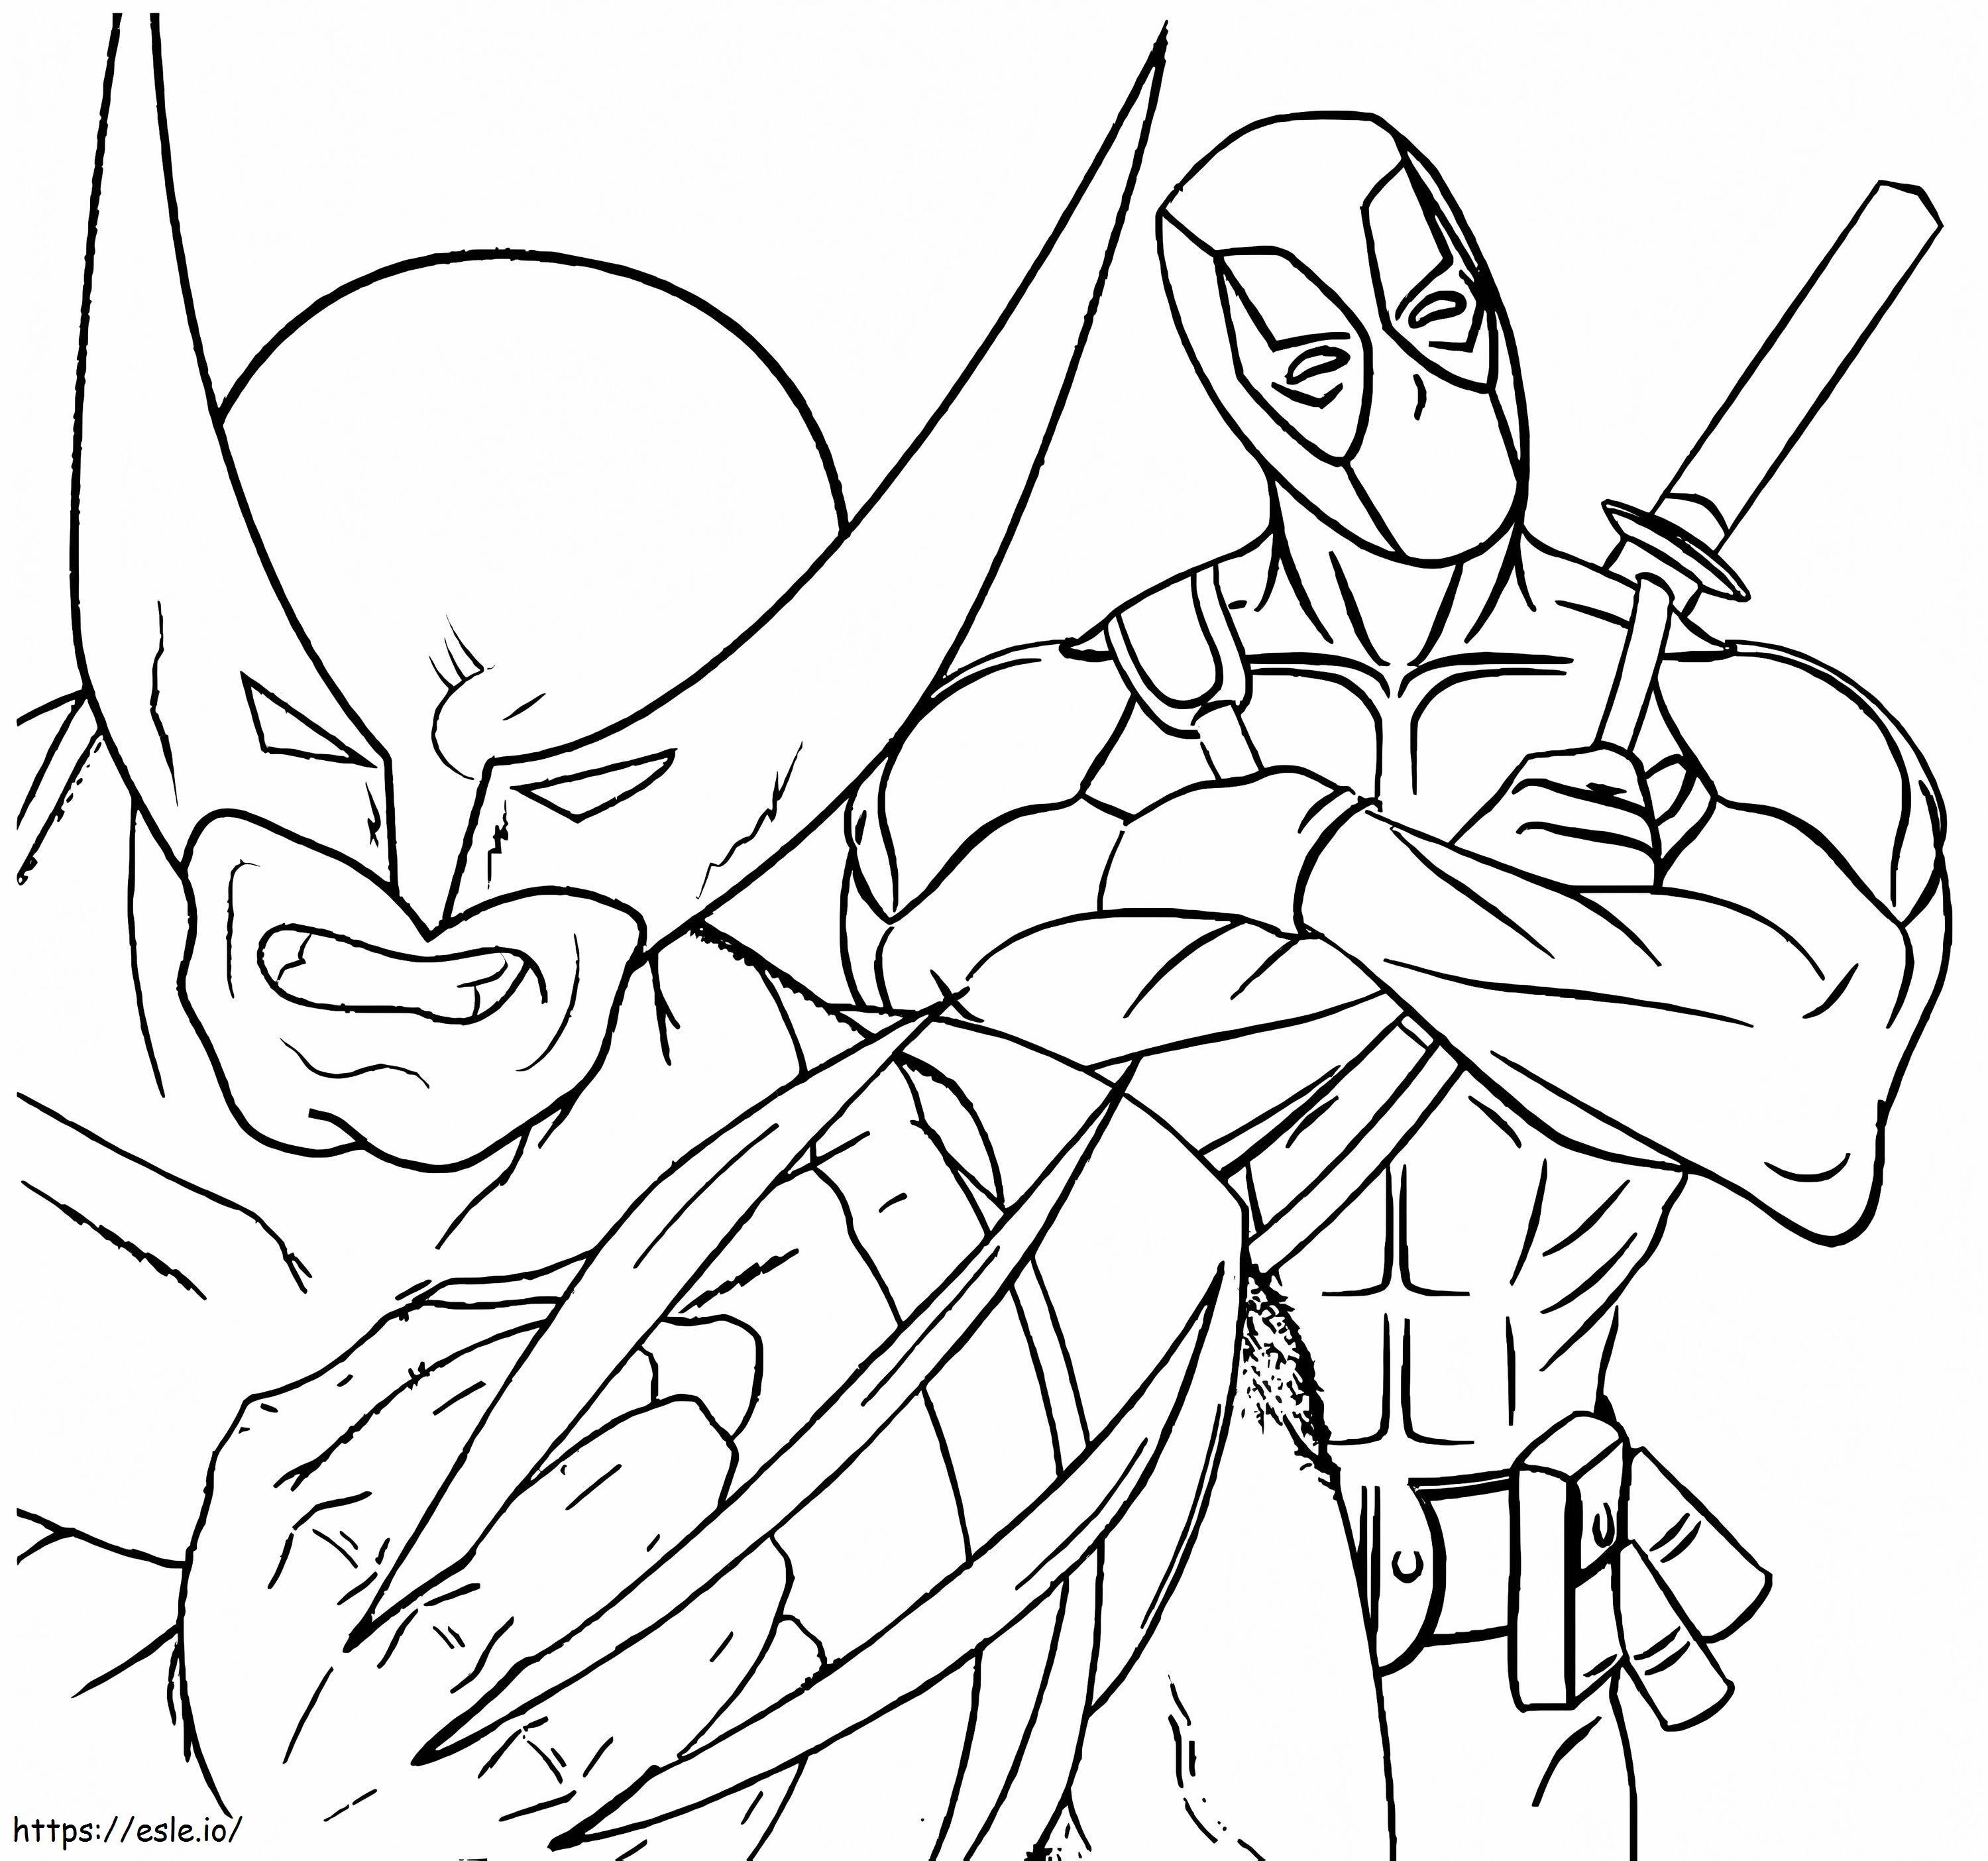 Deadpool și Wolverine de colorat